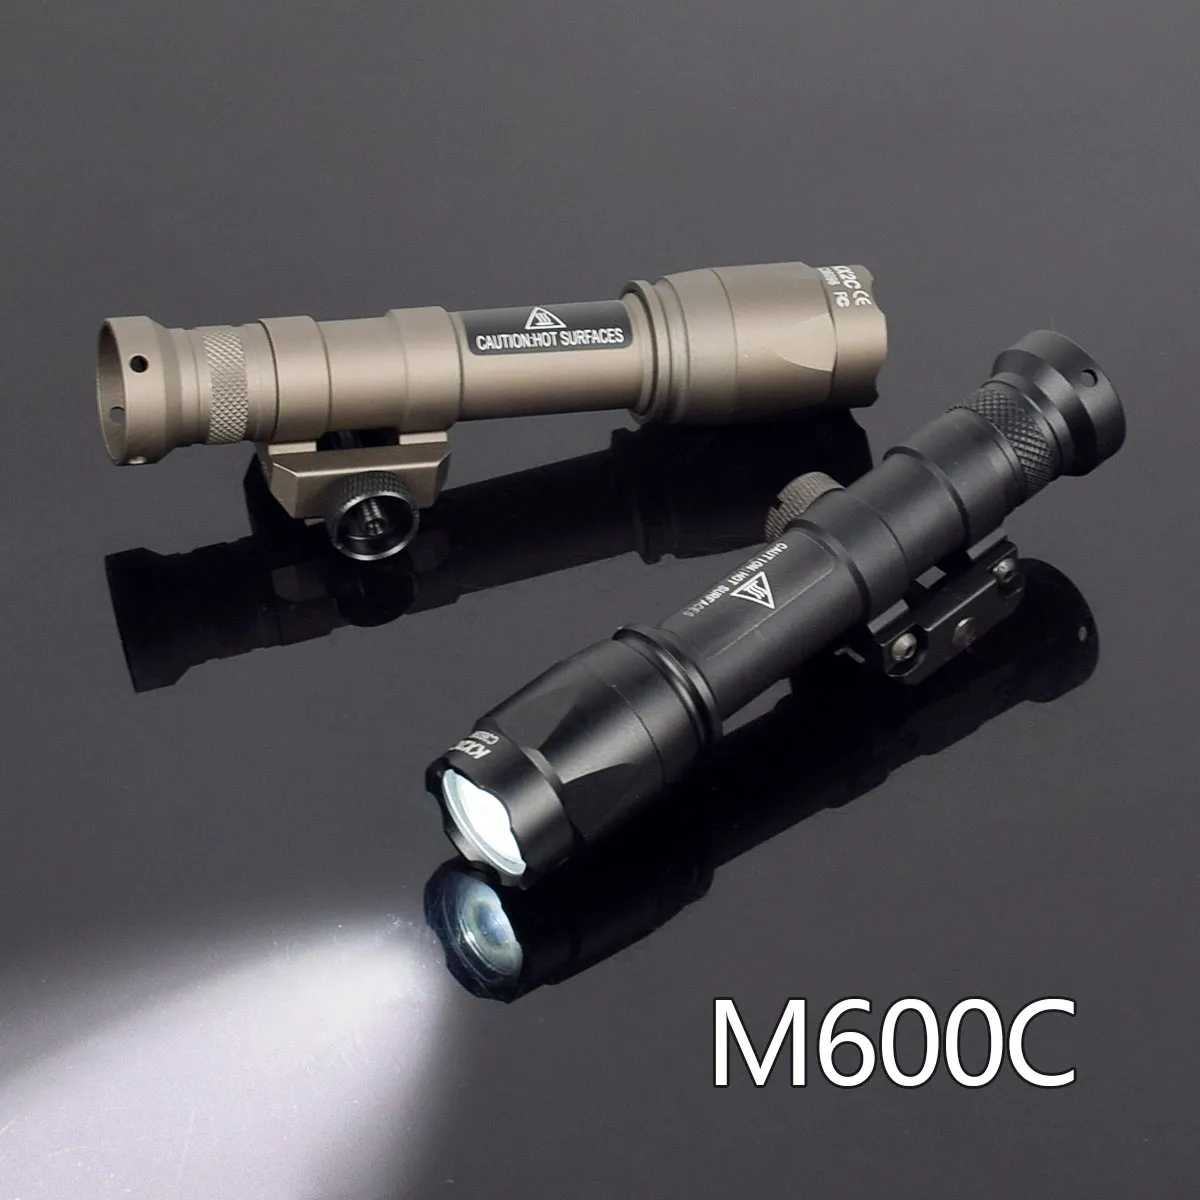 Tactical Surefir M600 M600C Taschenlampe Scout Lampe mit Fernschalter M600C Weiße LED -Lichtjagdzubehör